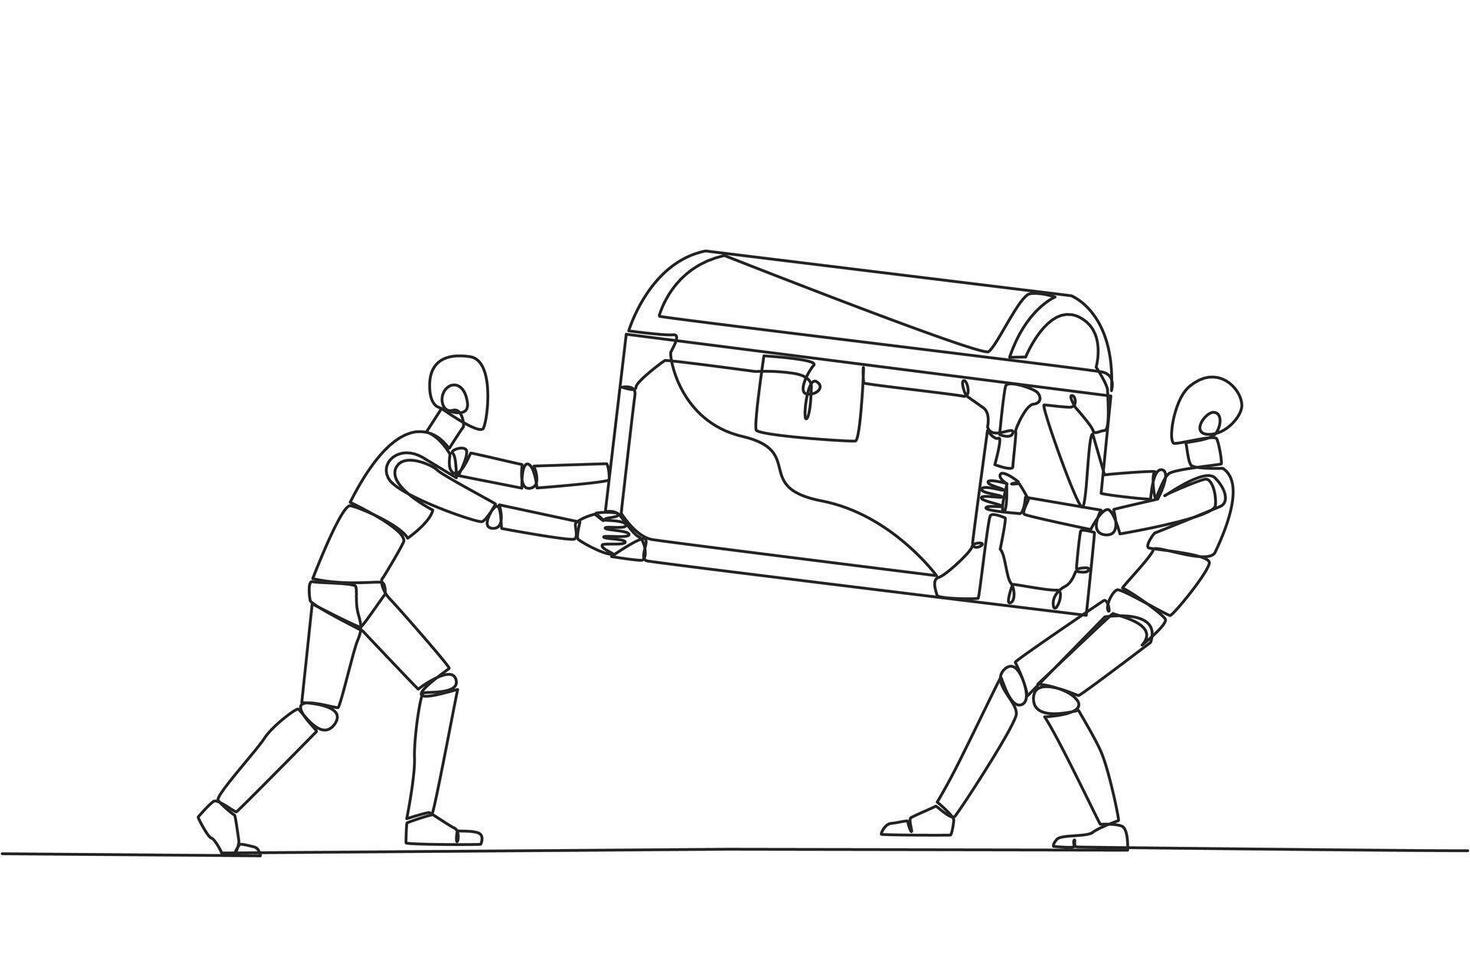 Single kontinuierlich Linie Zeichnung zwei egoistisch Roboter Kampf Über das Schatz Brust. Gefühl die meisten berechtigt zu das Entdeckung von Schatz. Rivalität und Wettbewerb. Technik. einer Linie Design Vektor Illustration